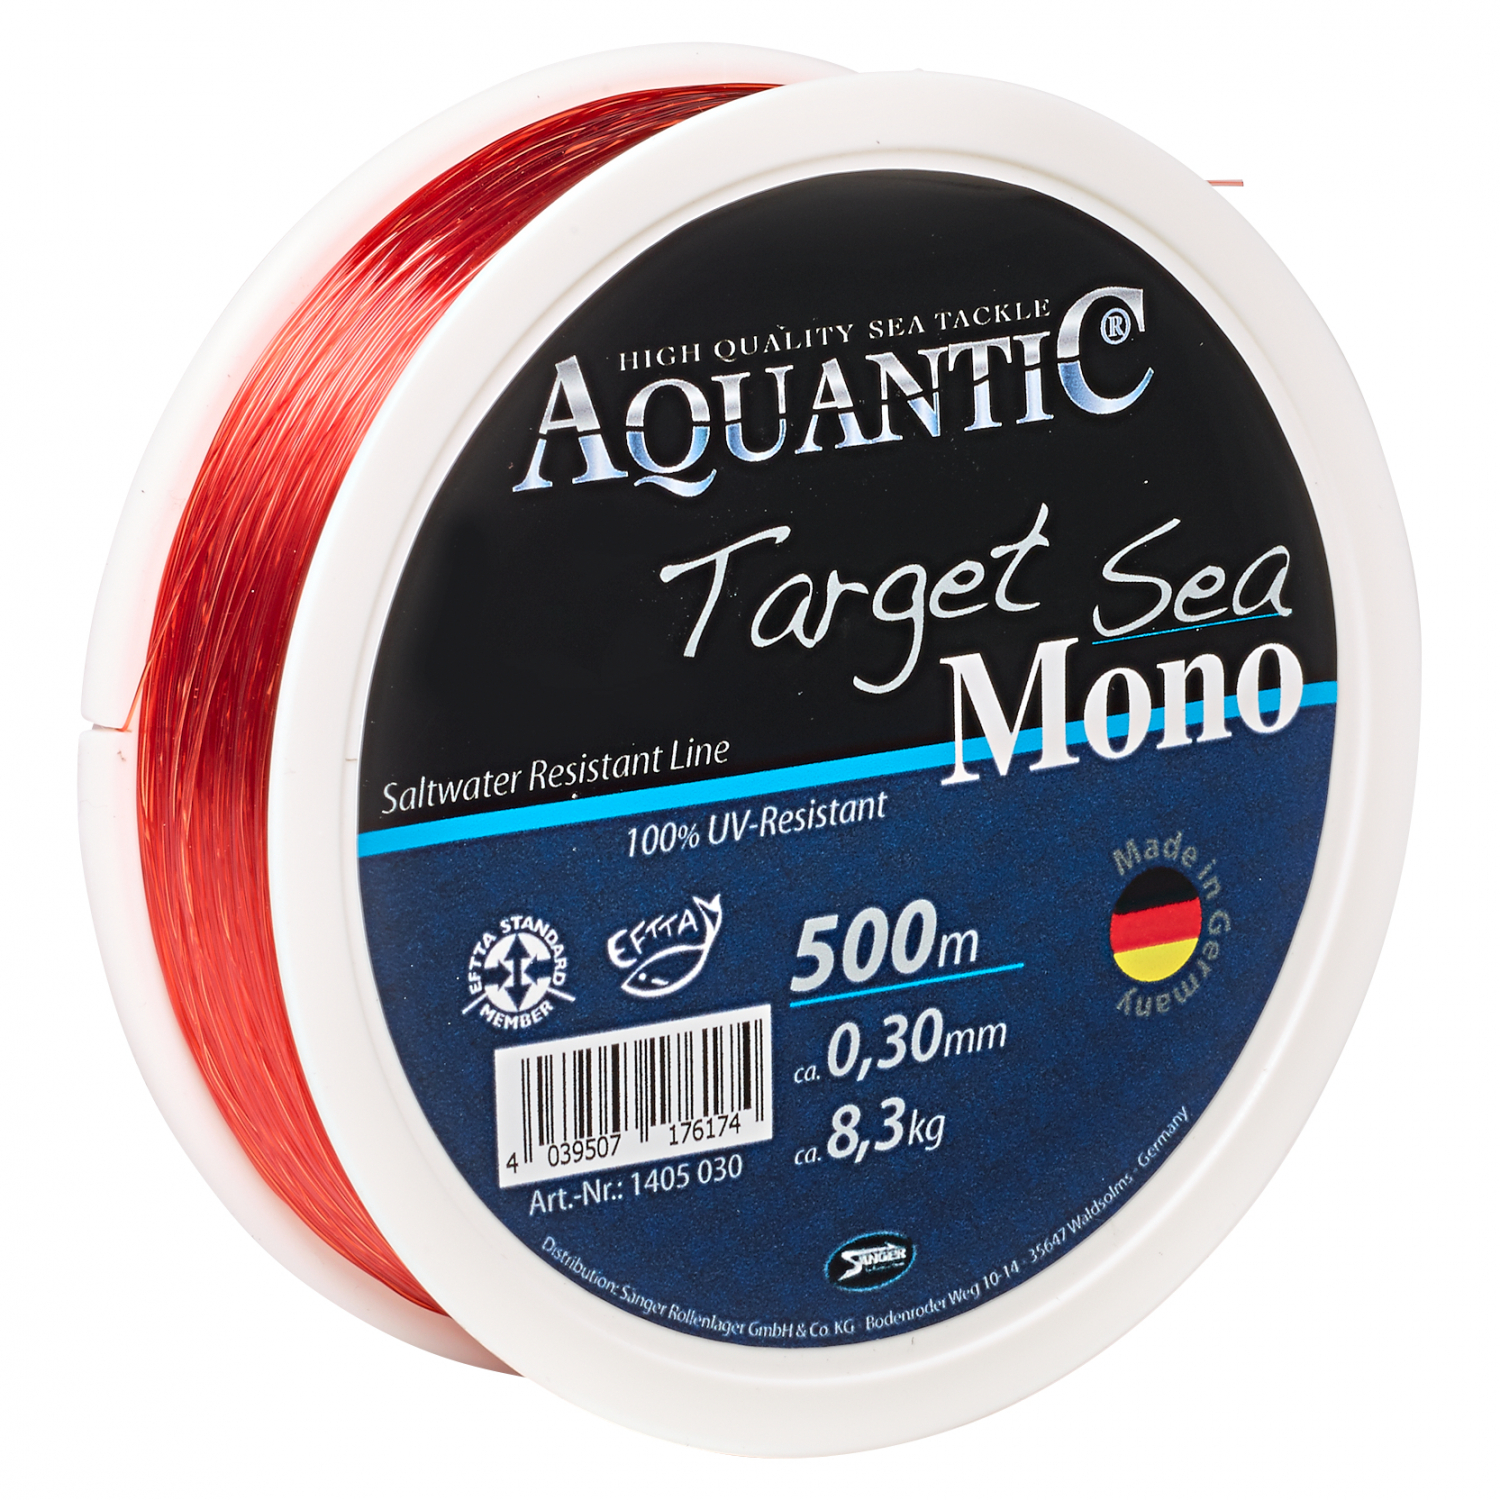 Aquantic Sänger Aquantic Target Sea Mono Angelschnur 